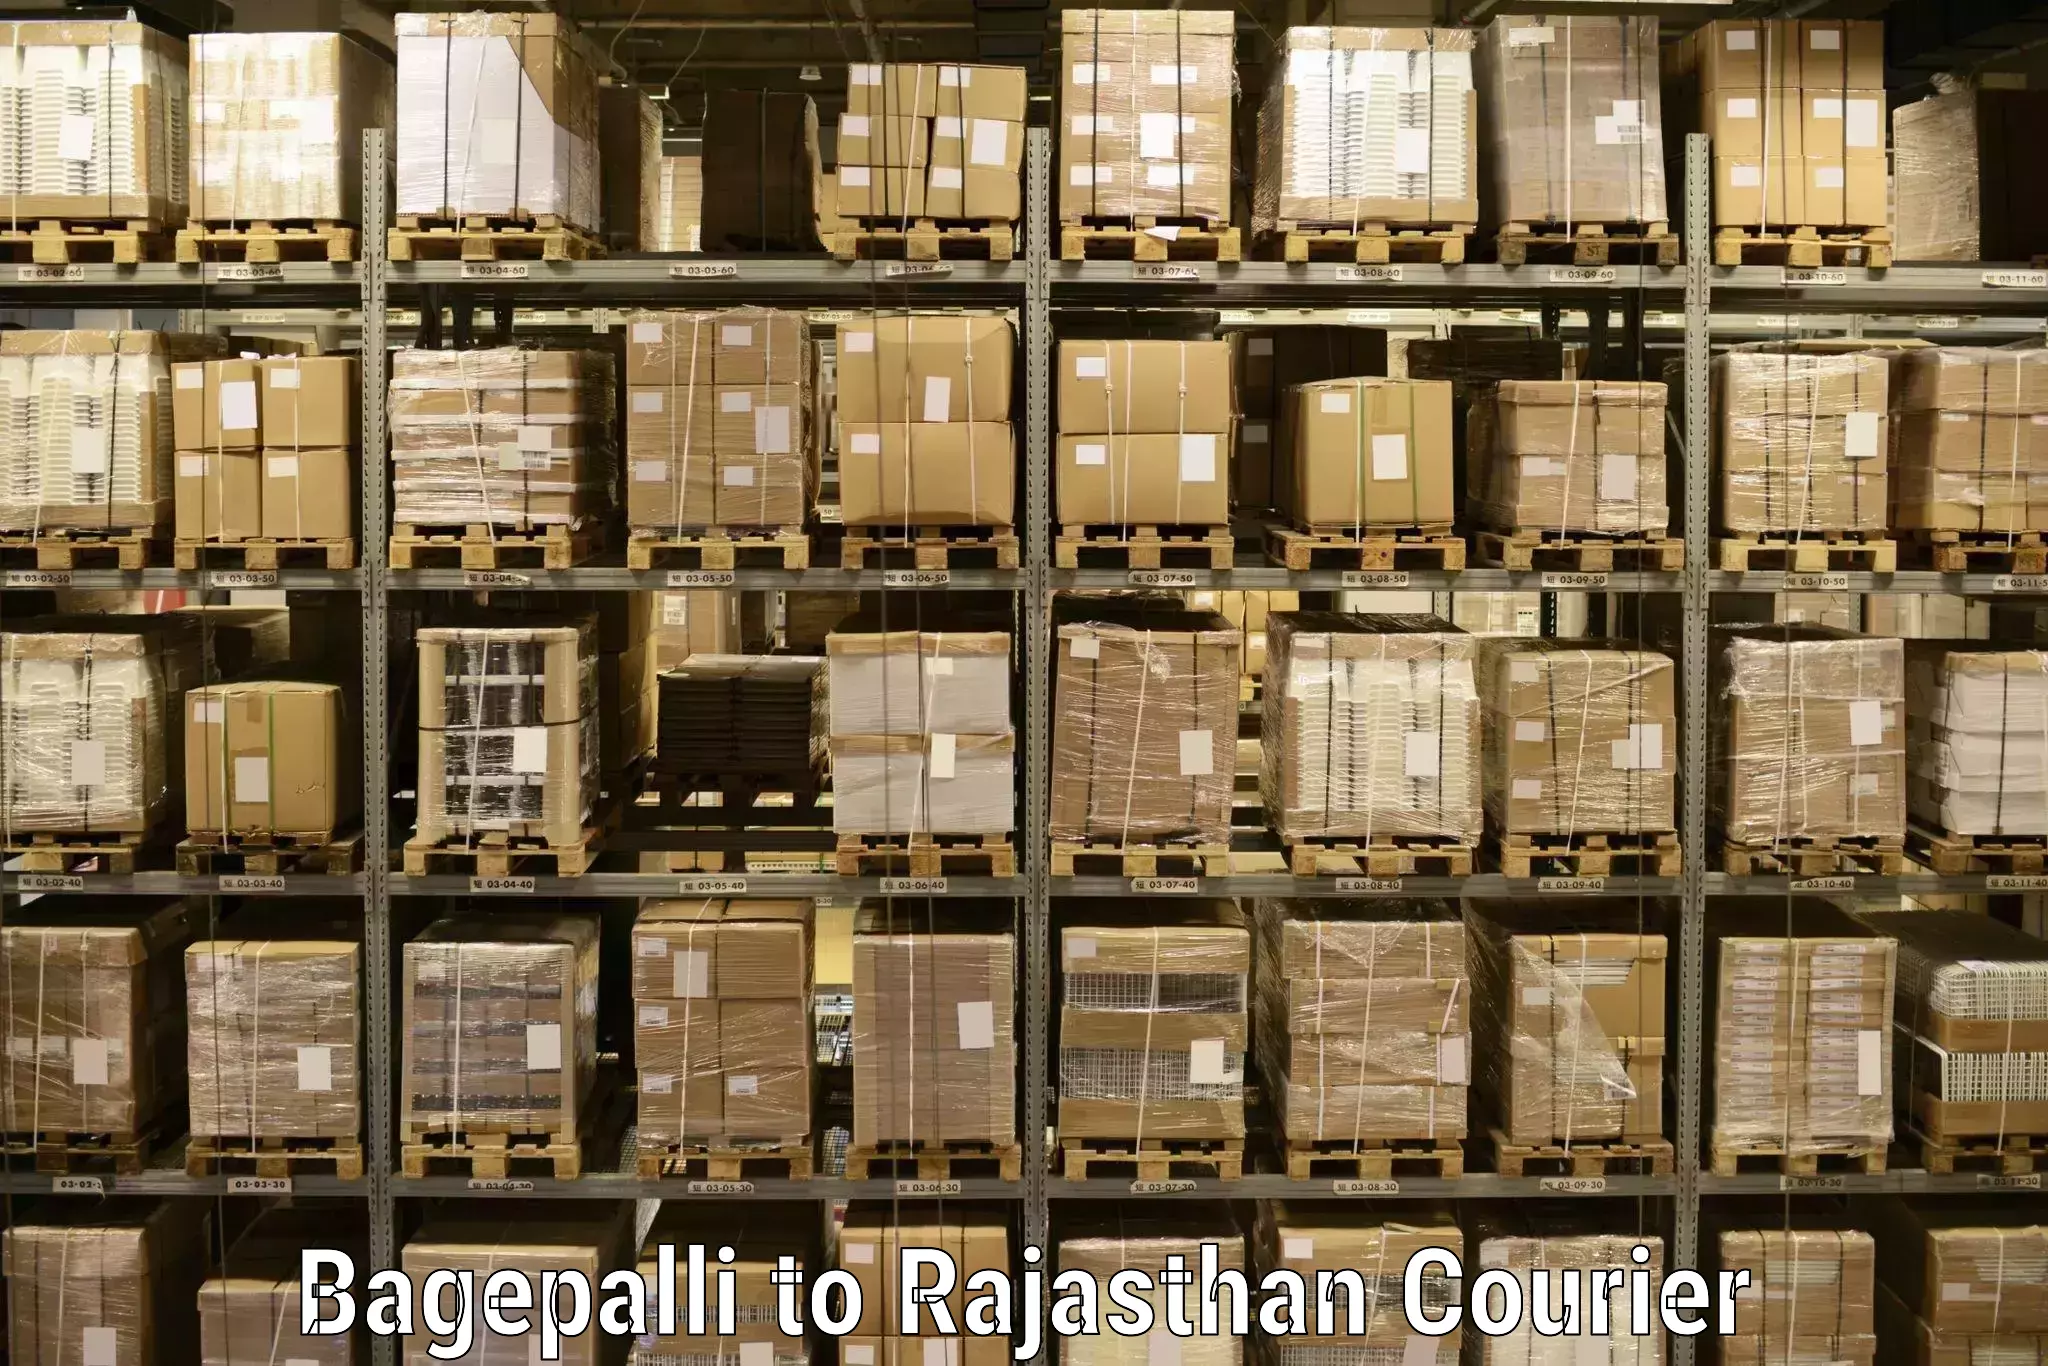 Courier service comparison Bagepalli to Jawahar Nagar